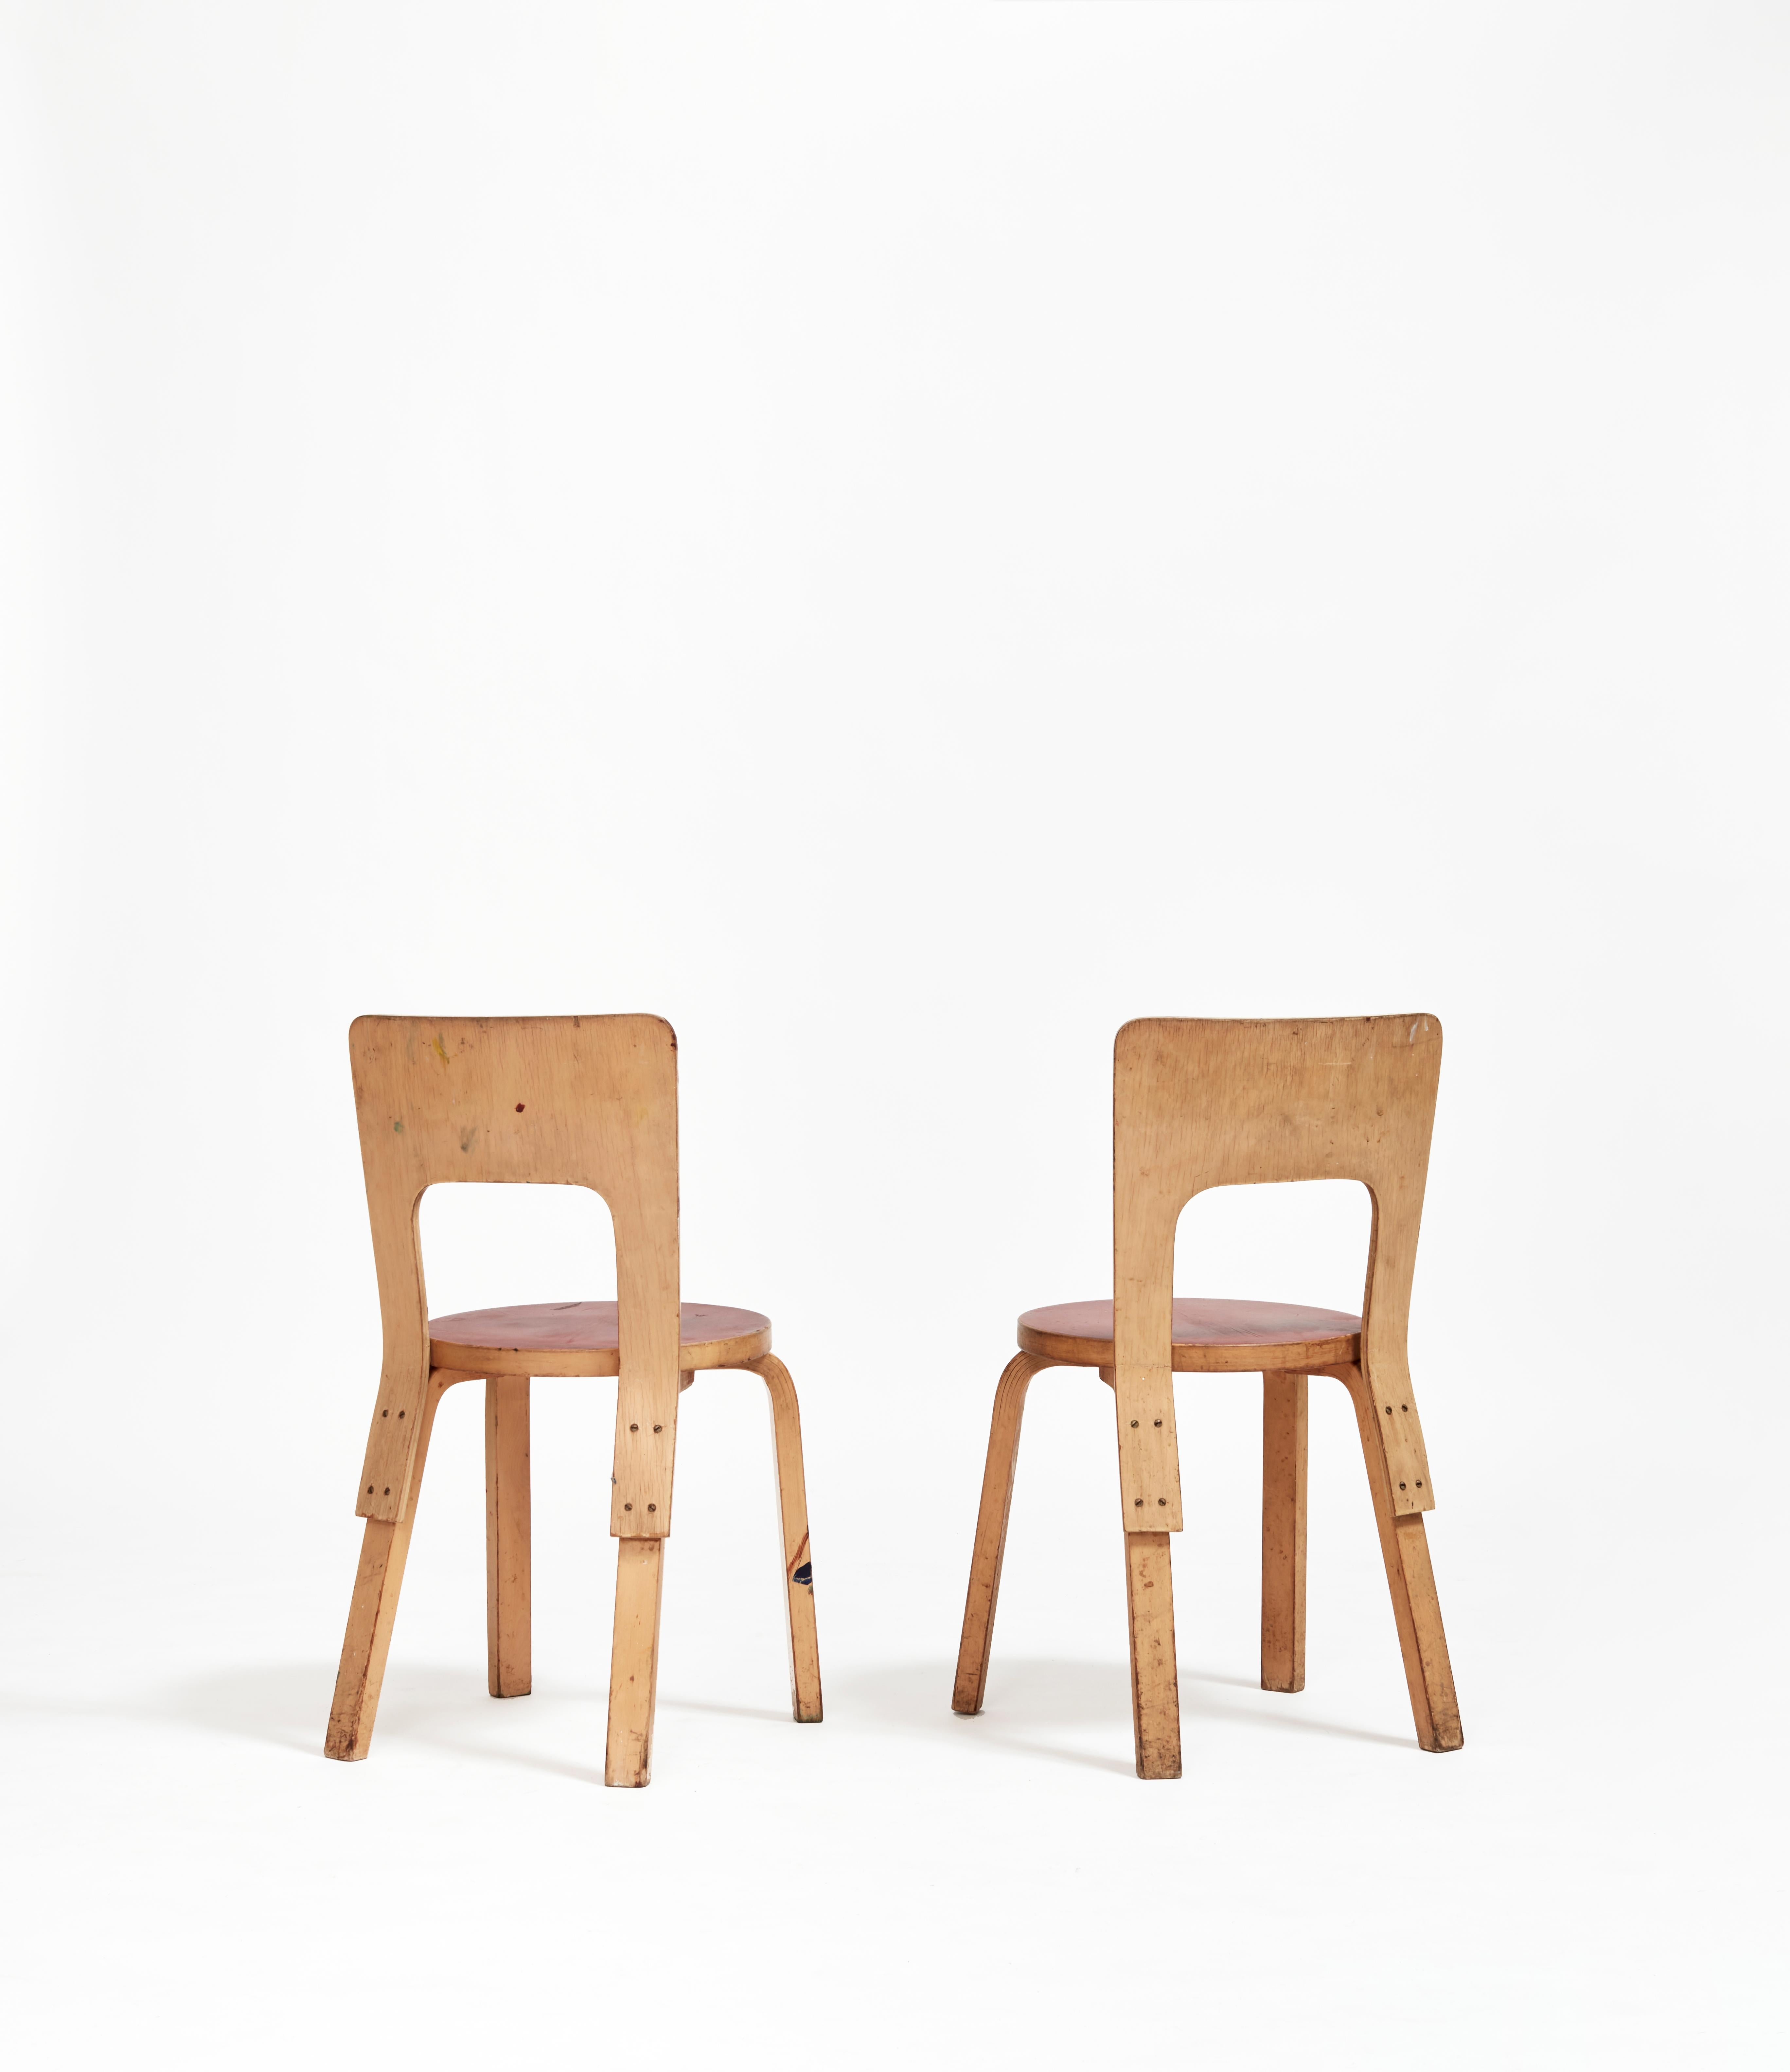 Le modèle 65 incarne l'approche du designer Alvar Aalto en matière de conception systématique et rationnelle dans le contexte du minimalisme finlandais ; il présente des lignes épurées et son utilisation préférée du bois de bouleau.